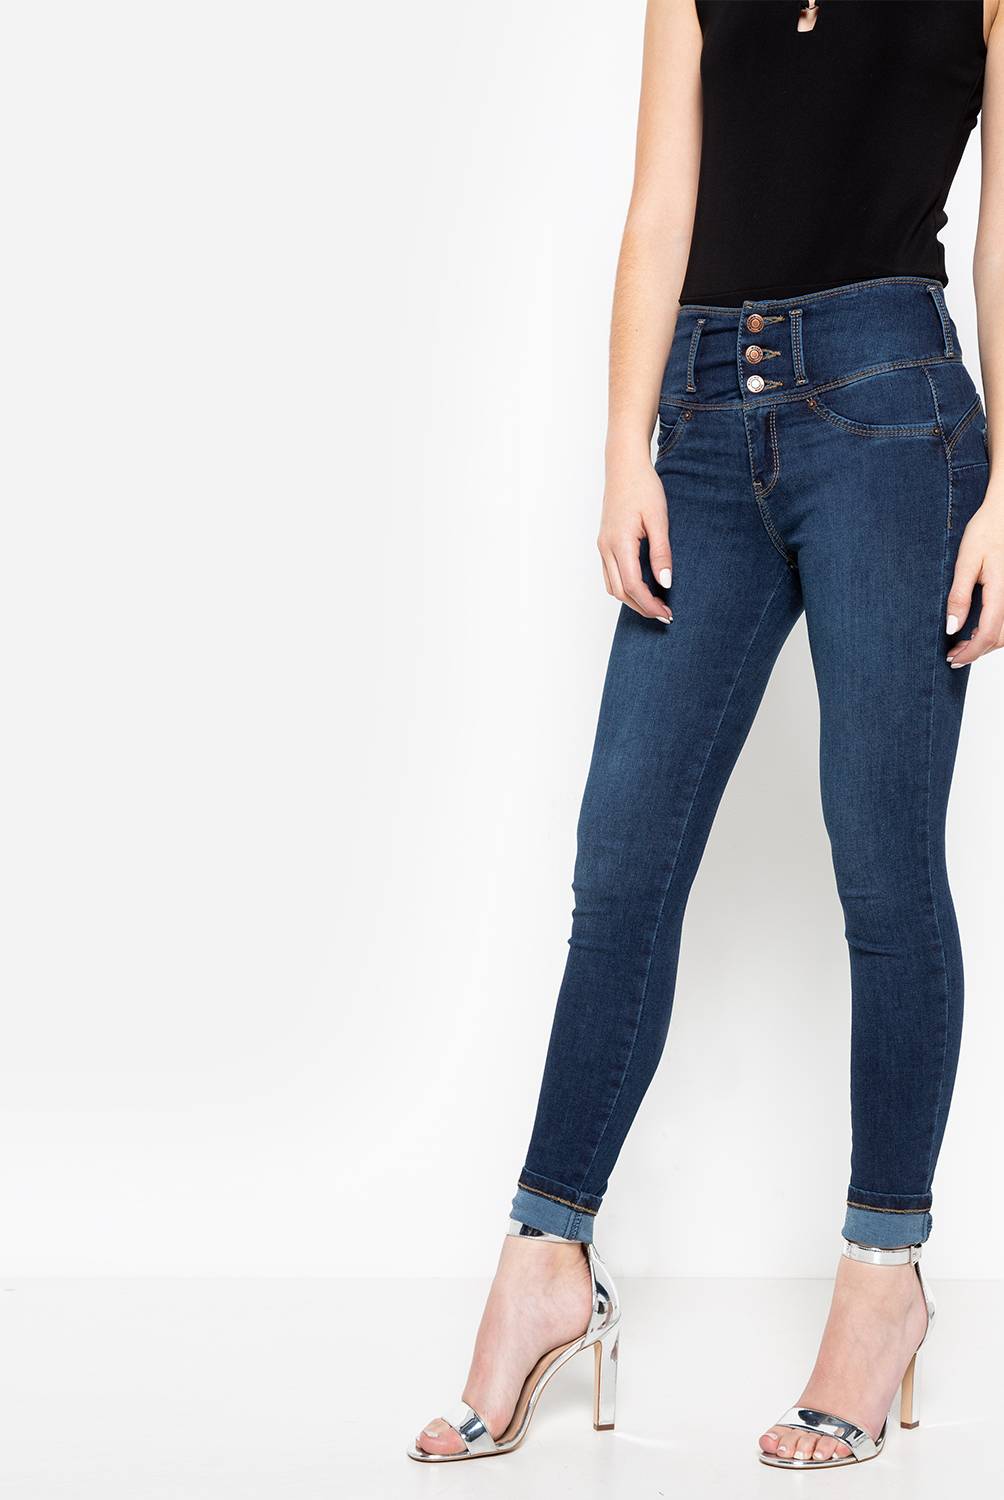 Mossimo - Jeans de Algodón Mujer